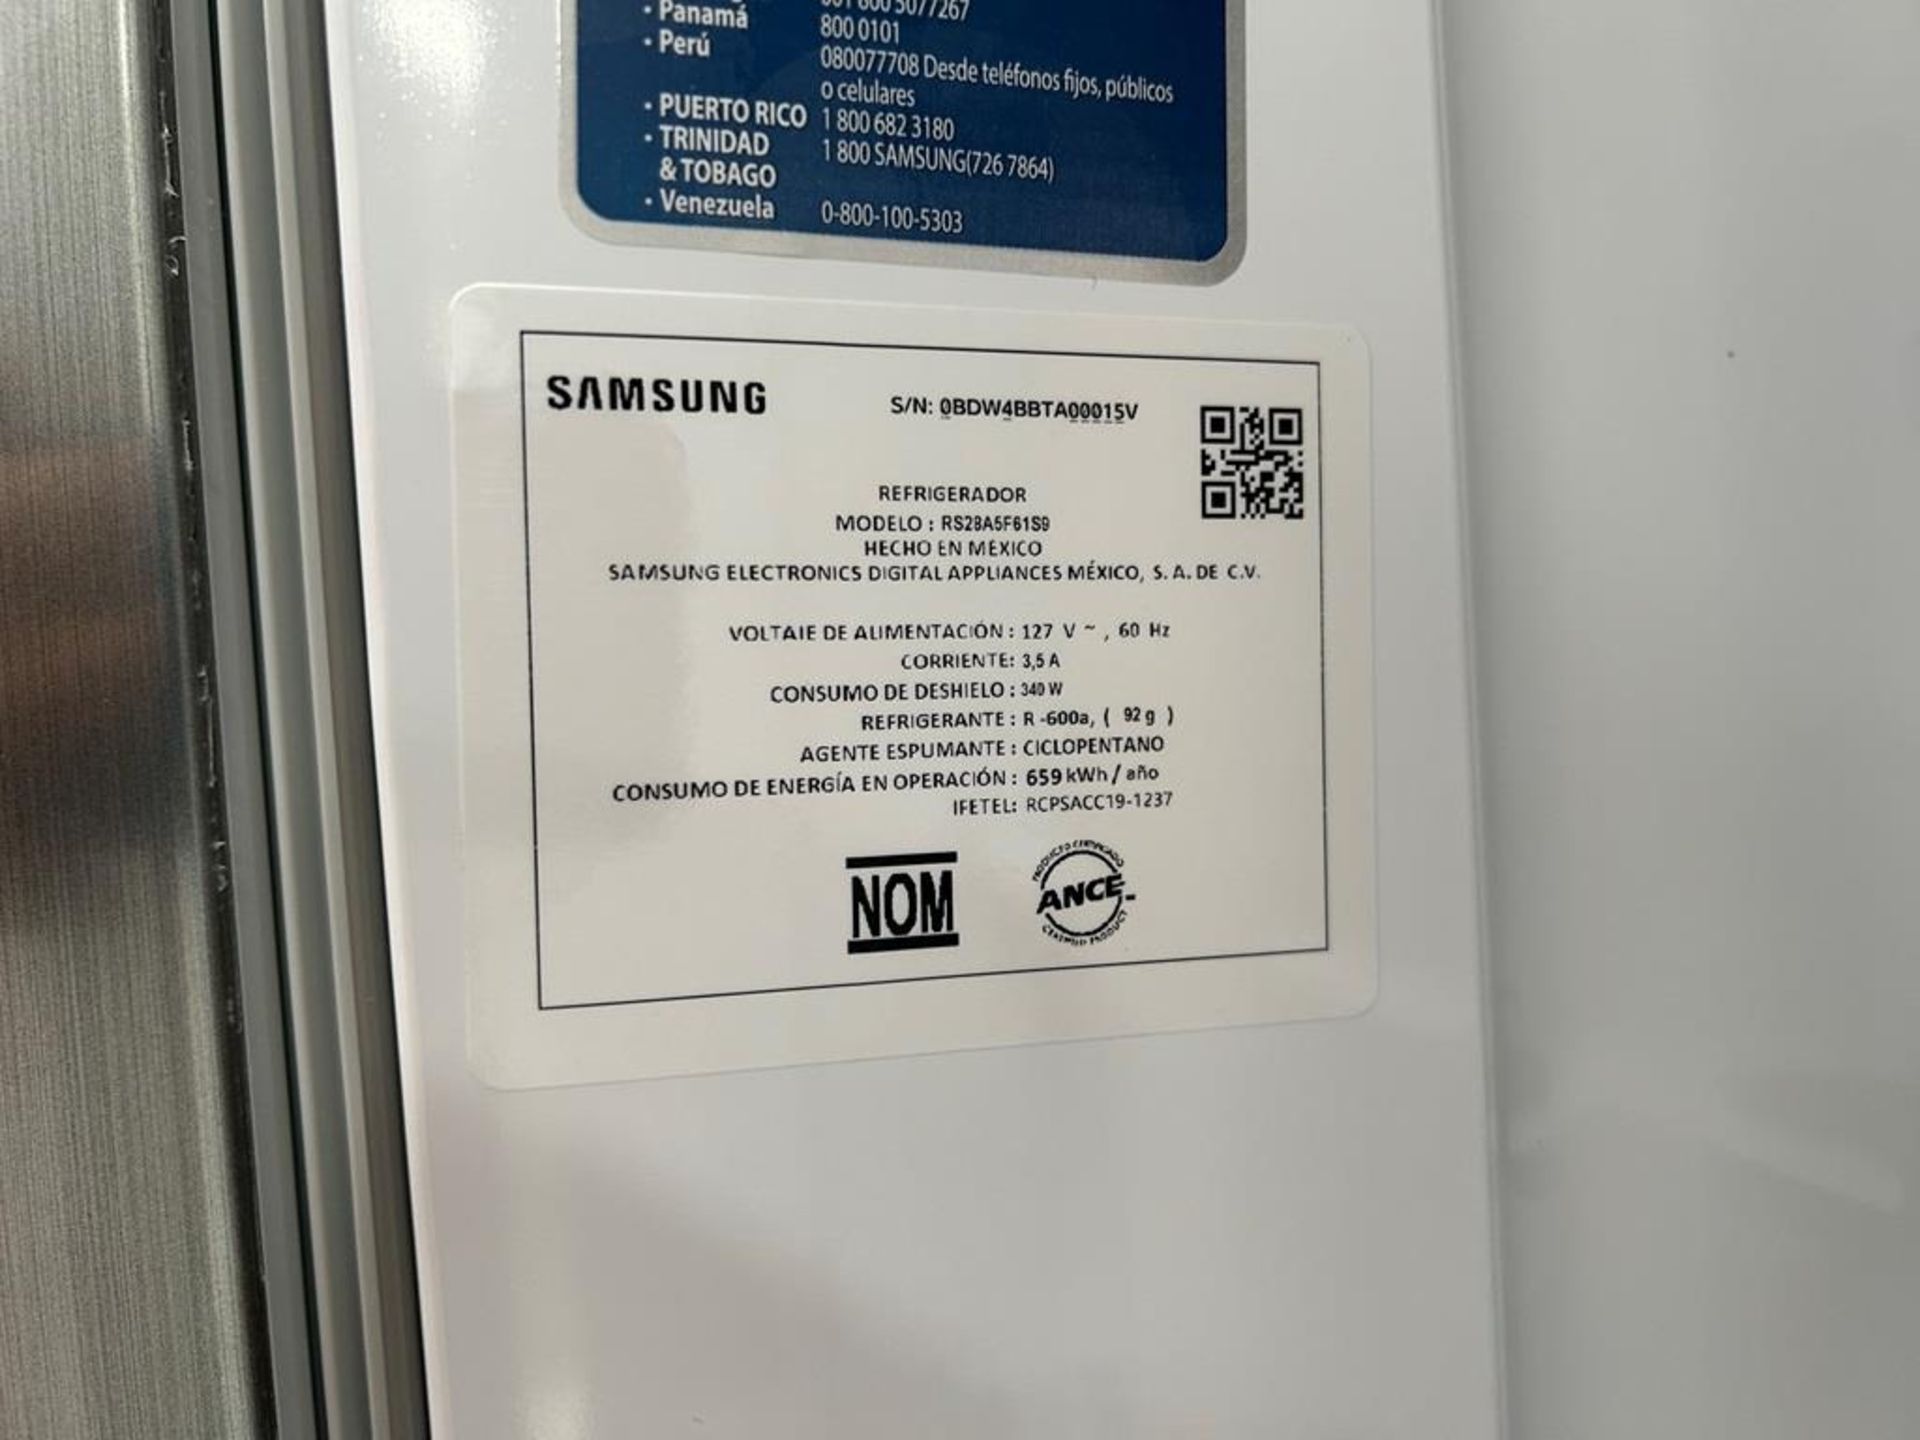 (NUEVO) Refrigerador Marca SAMSUNG, Modelo RS28A5F61S9, Serie 000015V, Color GRIS - Image 8 of 10